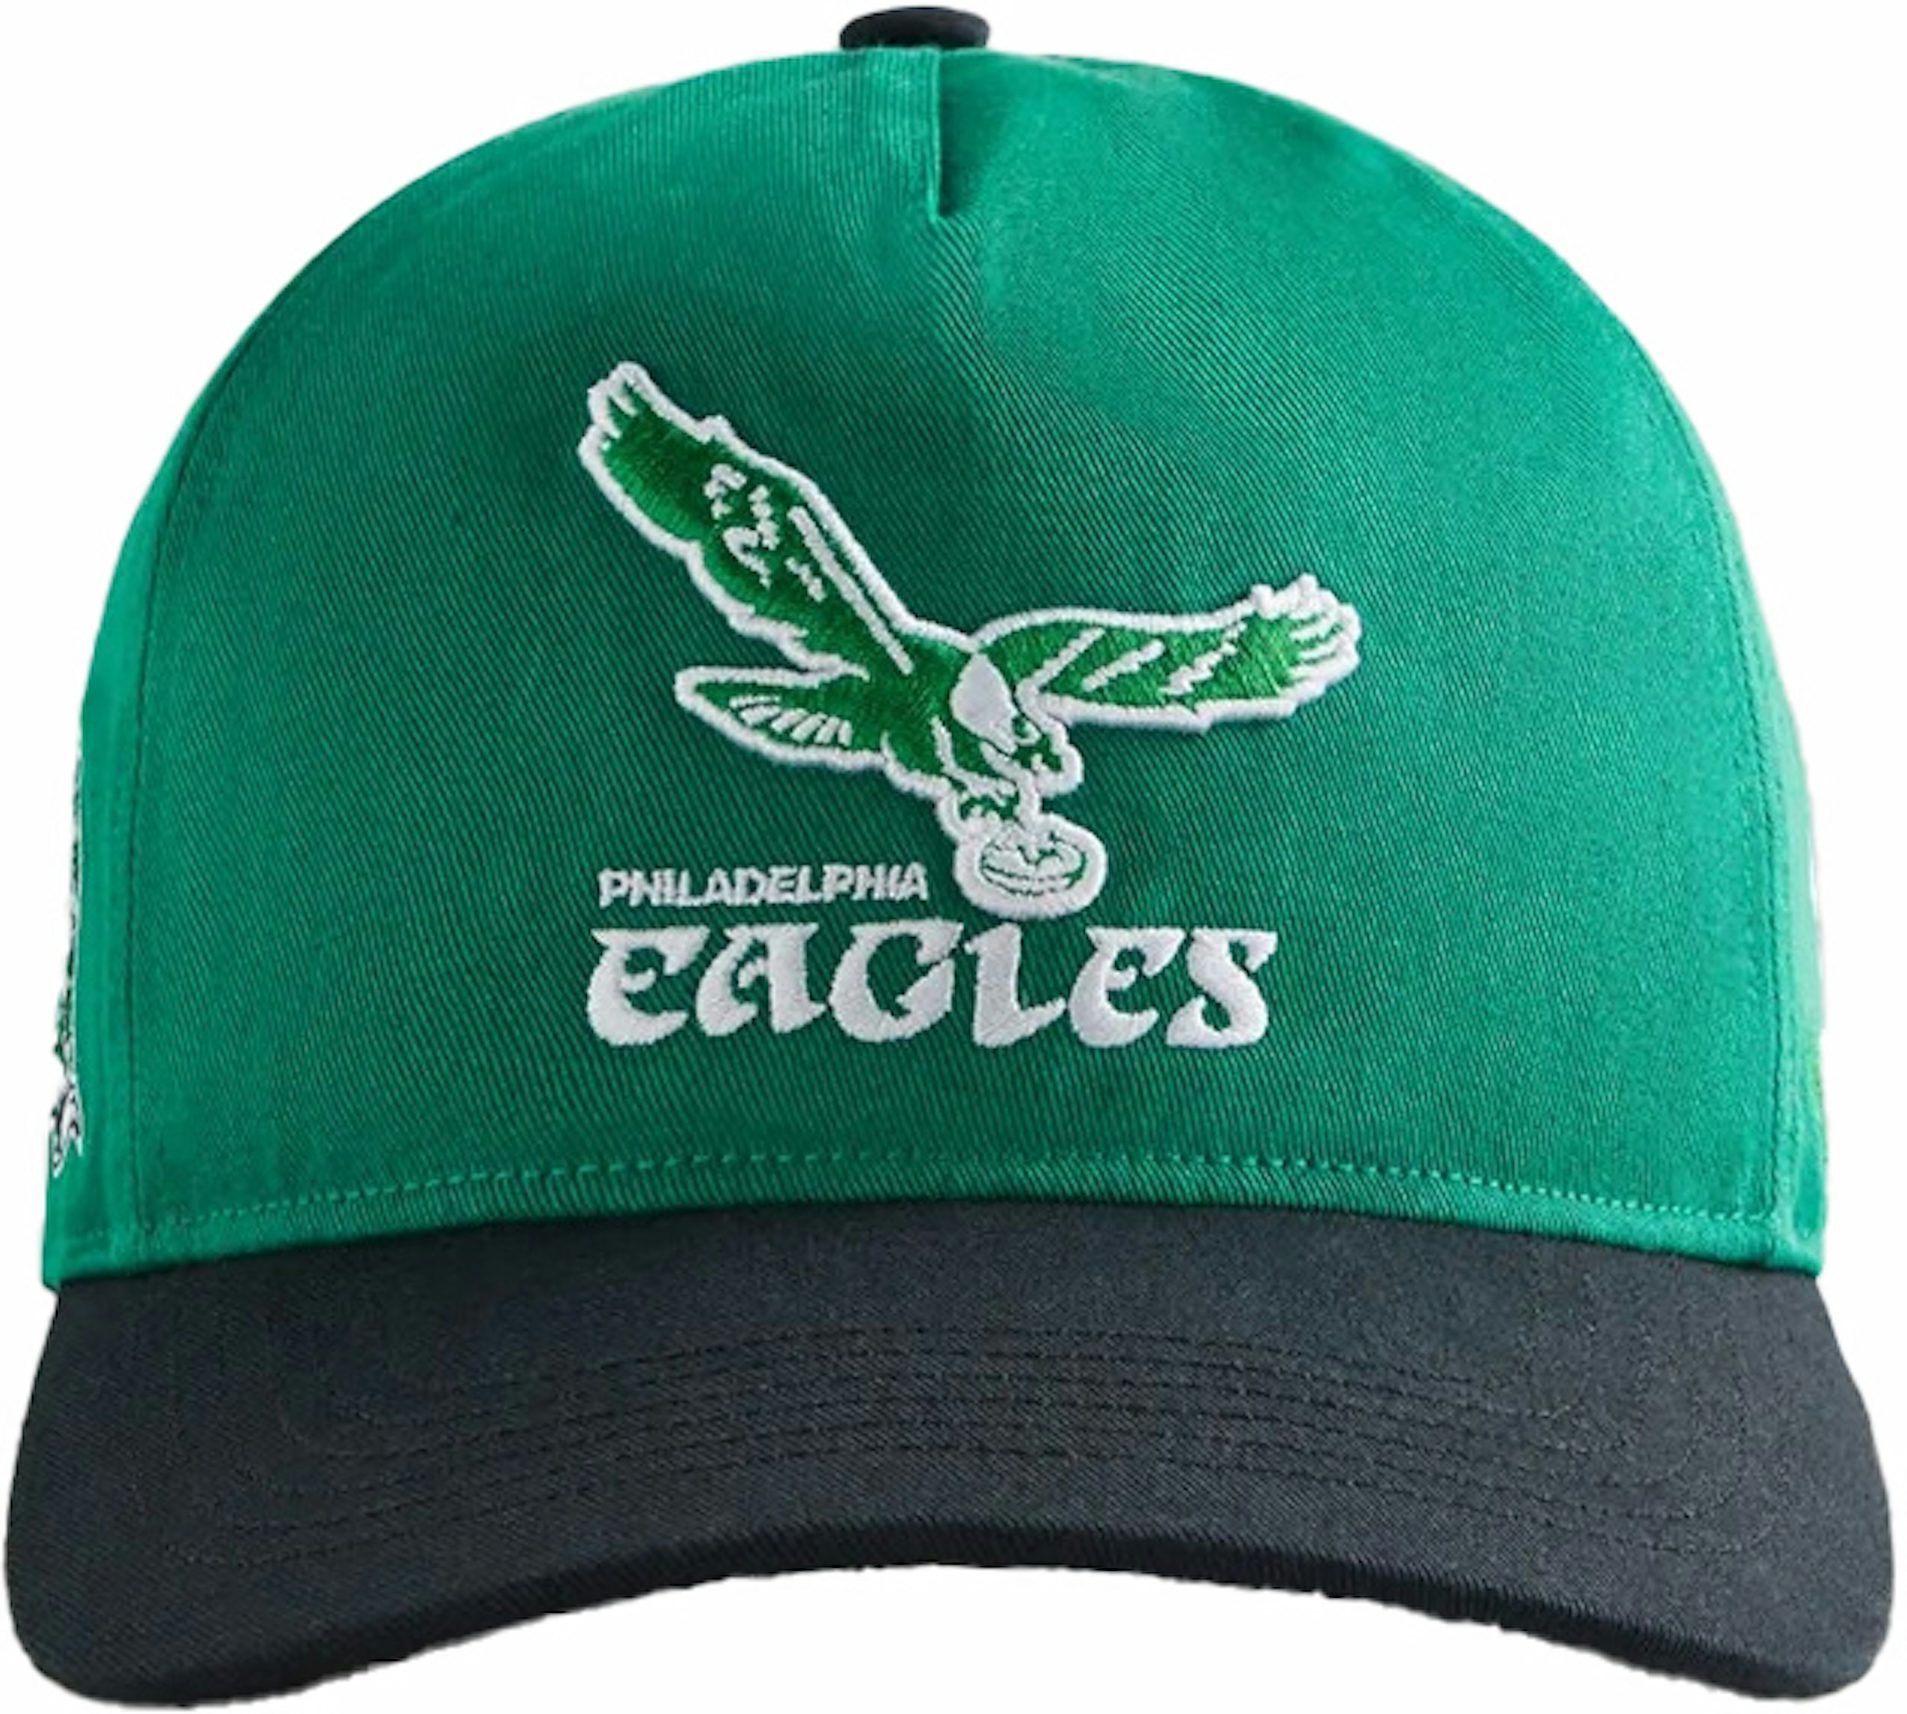 nfl eagles hat